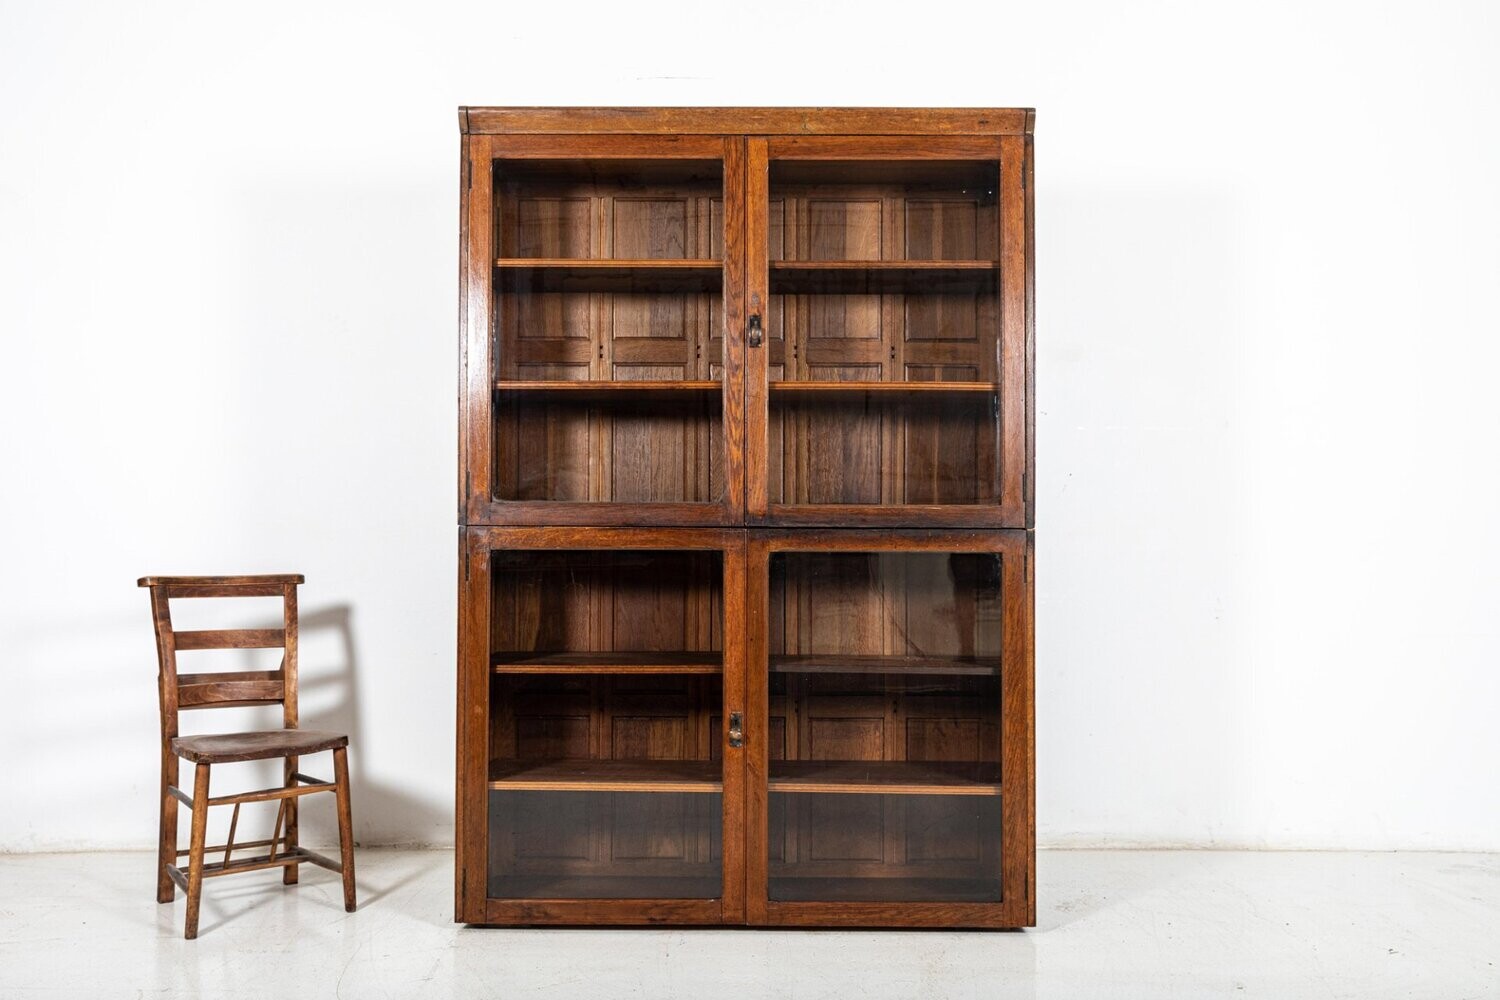 Large 19thC English Oak Glazed Museum Display Cabinet